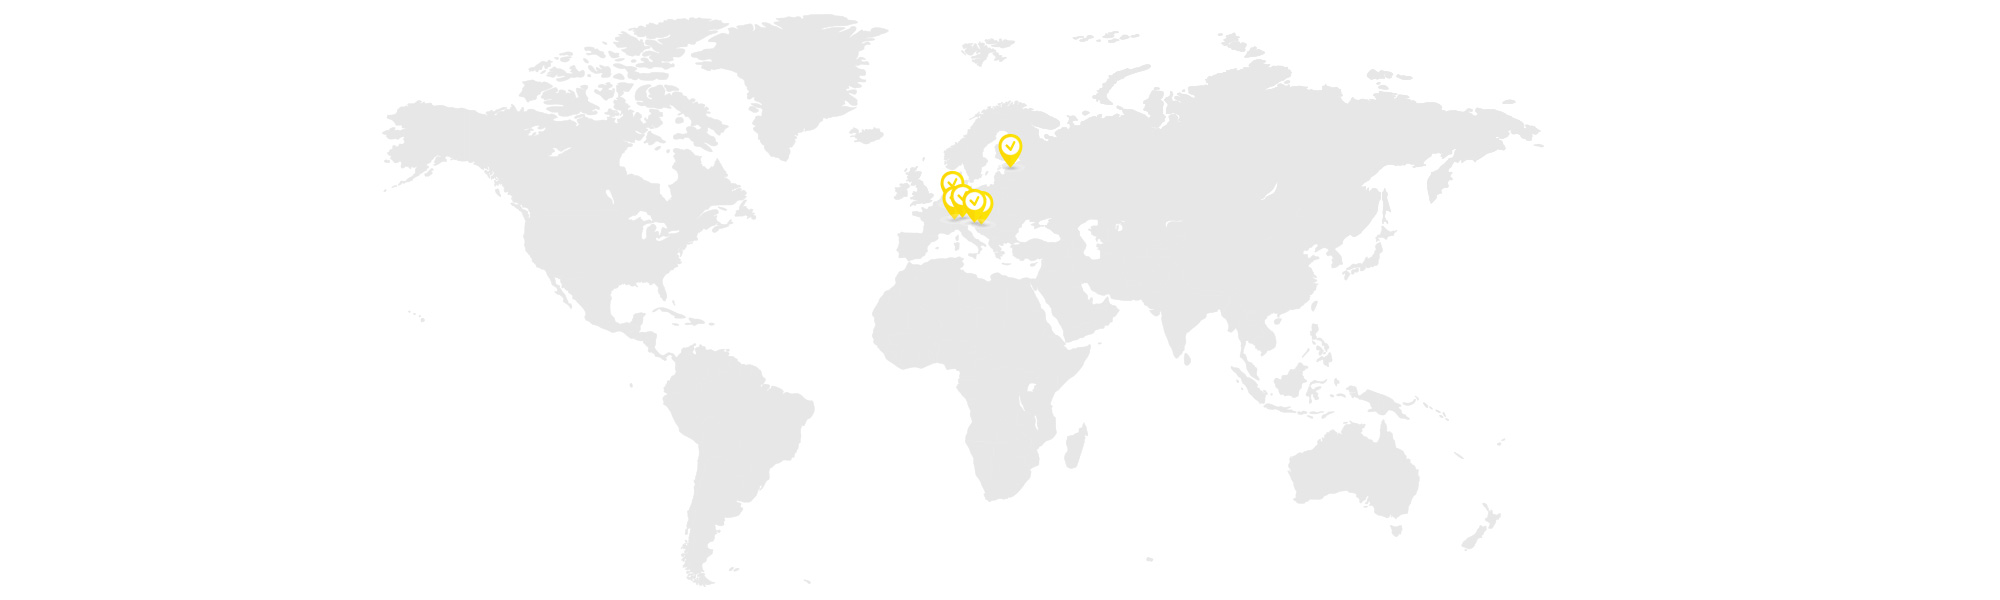 Totter Midi partnerji na zemljevidu sveta